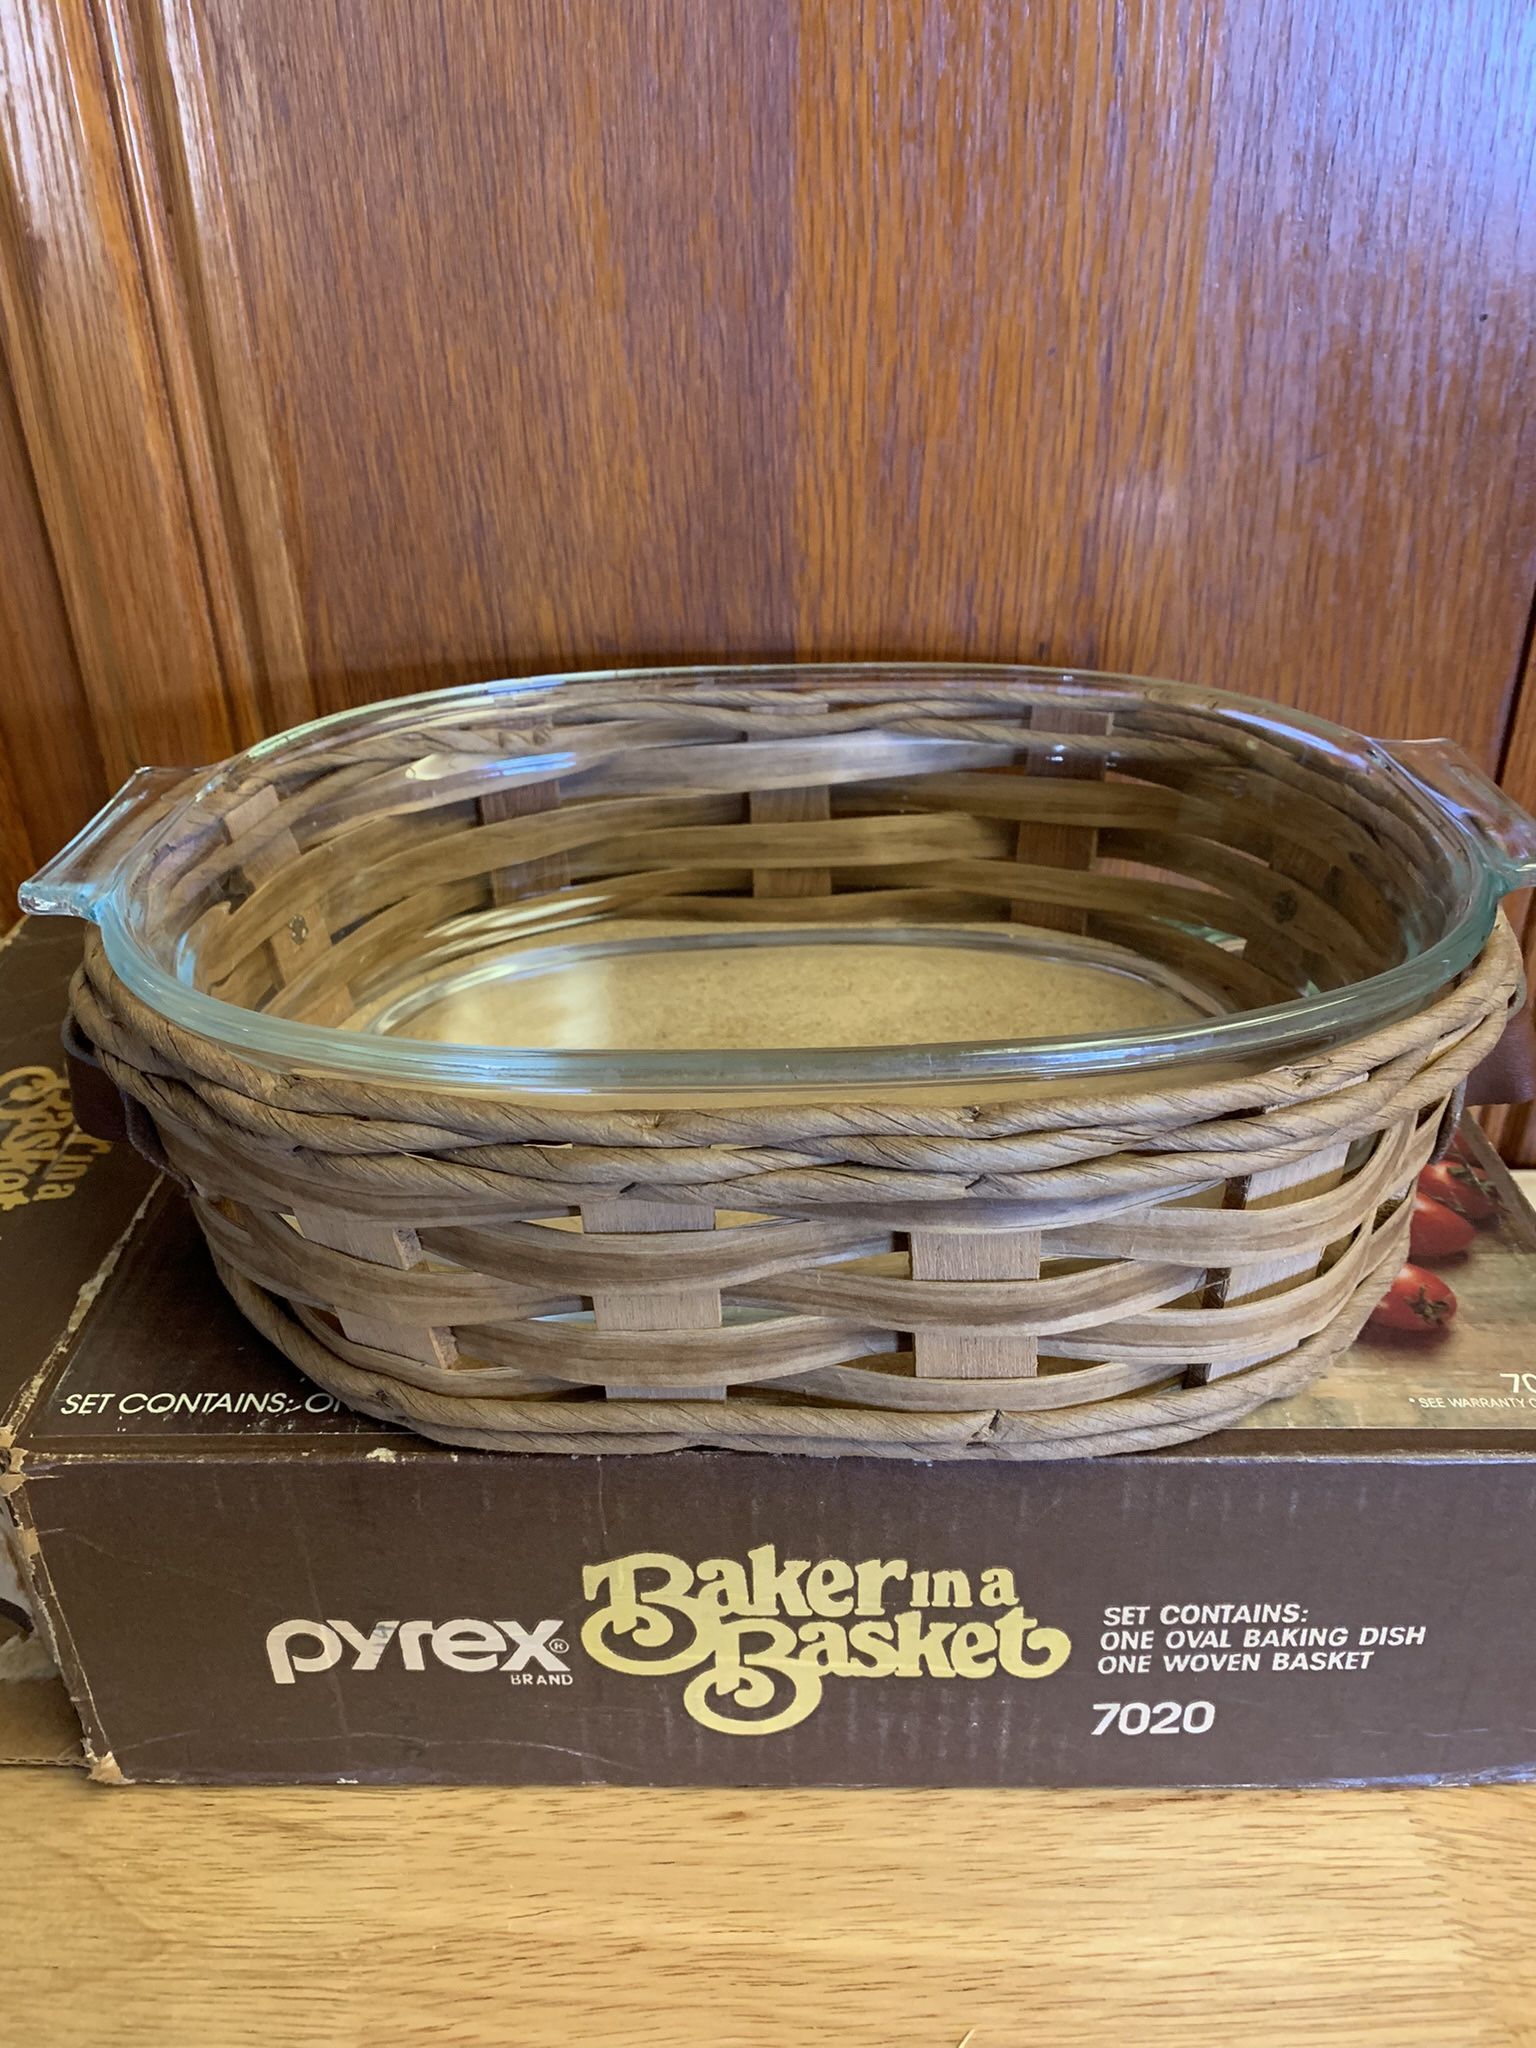 Vintage Pyrex 2 quart casserole